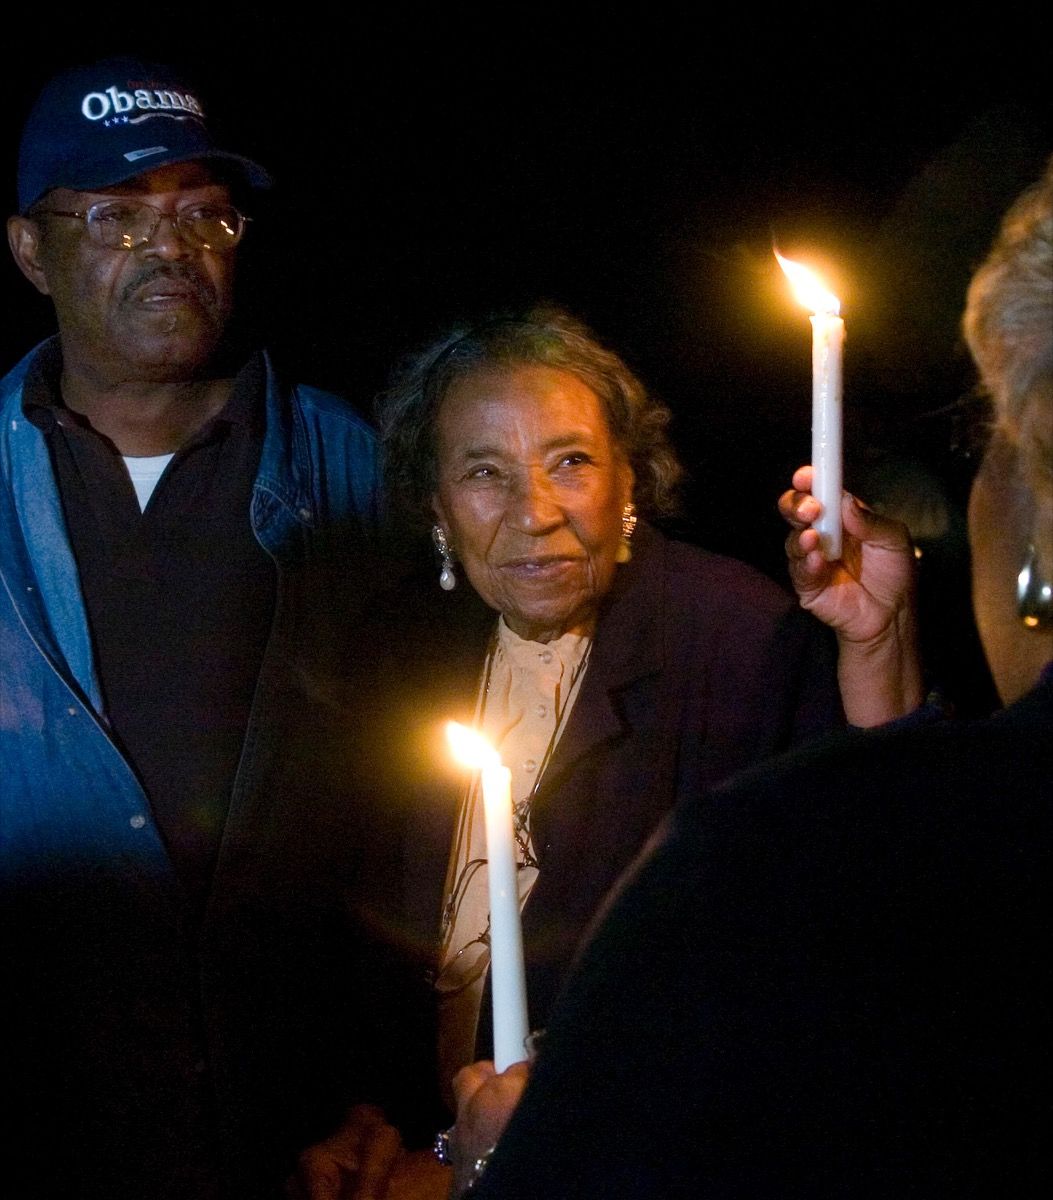 شاركت جندية المشاة المخضرمة في مجال الحقوق المدنية أميليا بوينتون روبنسون ، 97 عامًا ، في وقفة احتجاجية على ضوء الشموع عند سفح جسر إدموند بيتوس قبل عودة الانتخابات في سلمى ، ألاباما ، الولايات المتحدة الأمريكية ، يوم الثلاثاء 4 نوفمبر.